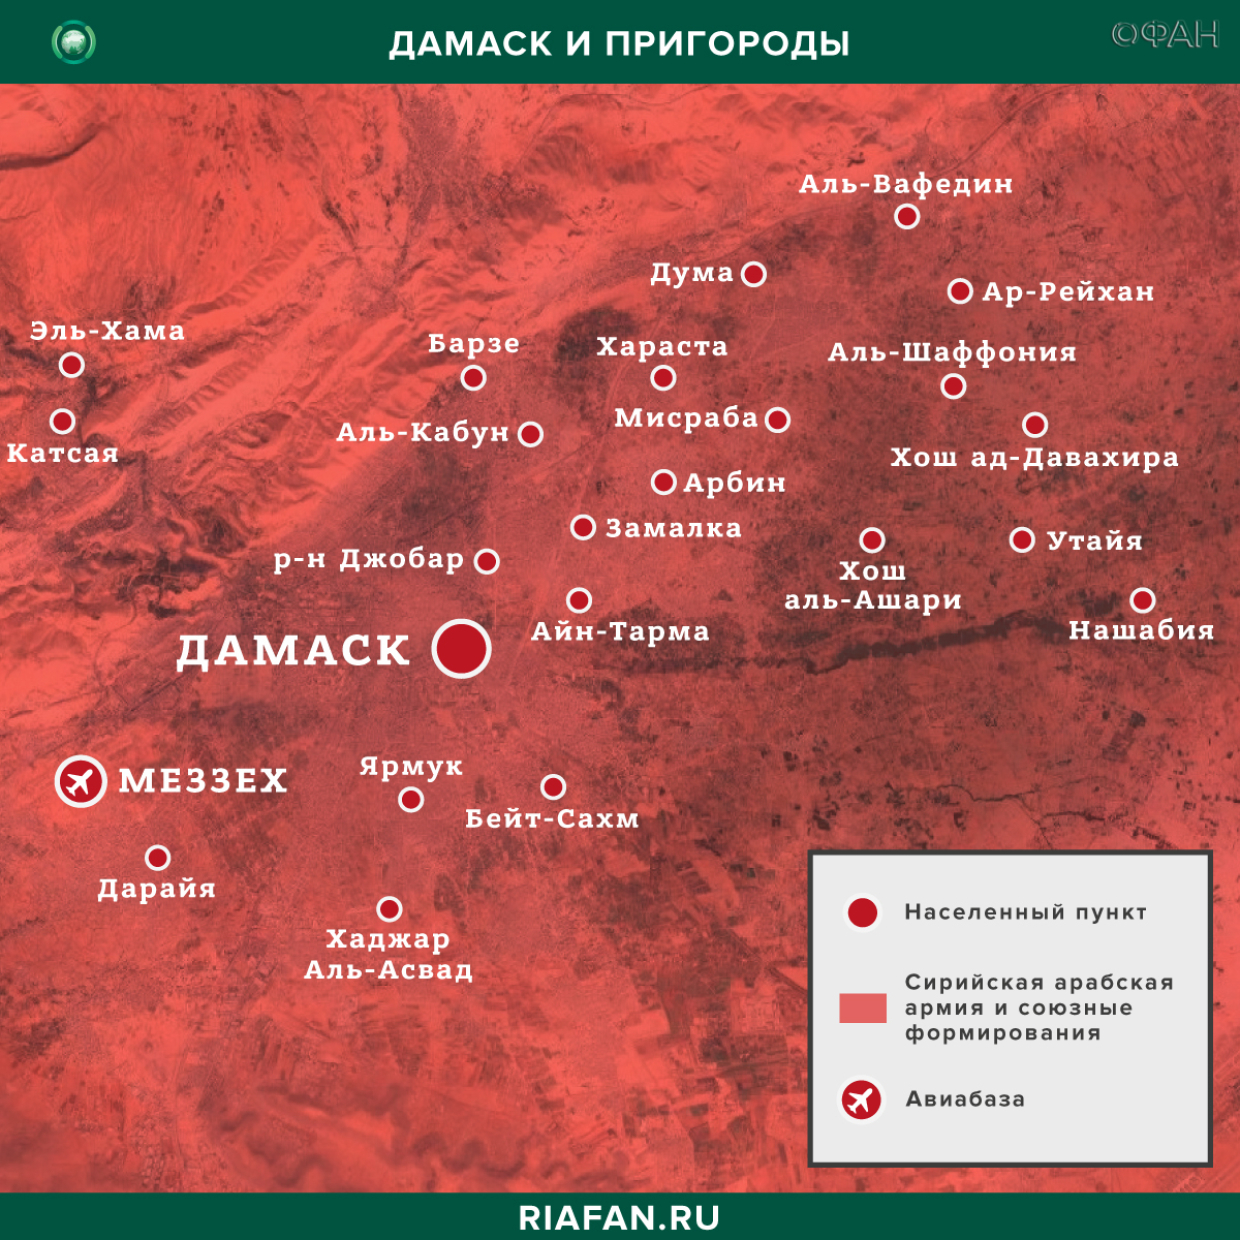 Nouvelles de Syrie 5 Septembre 12.30: обстрелы SDF в Ракке привели к ранению трех сирийцев